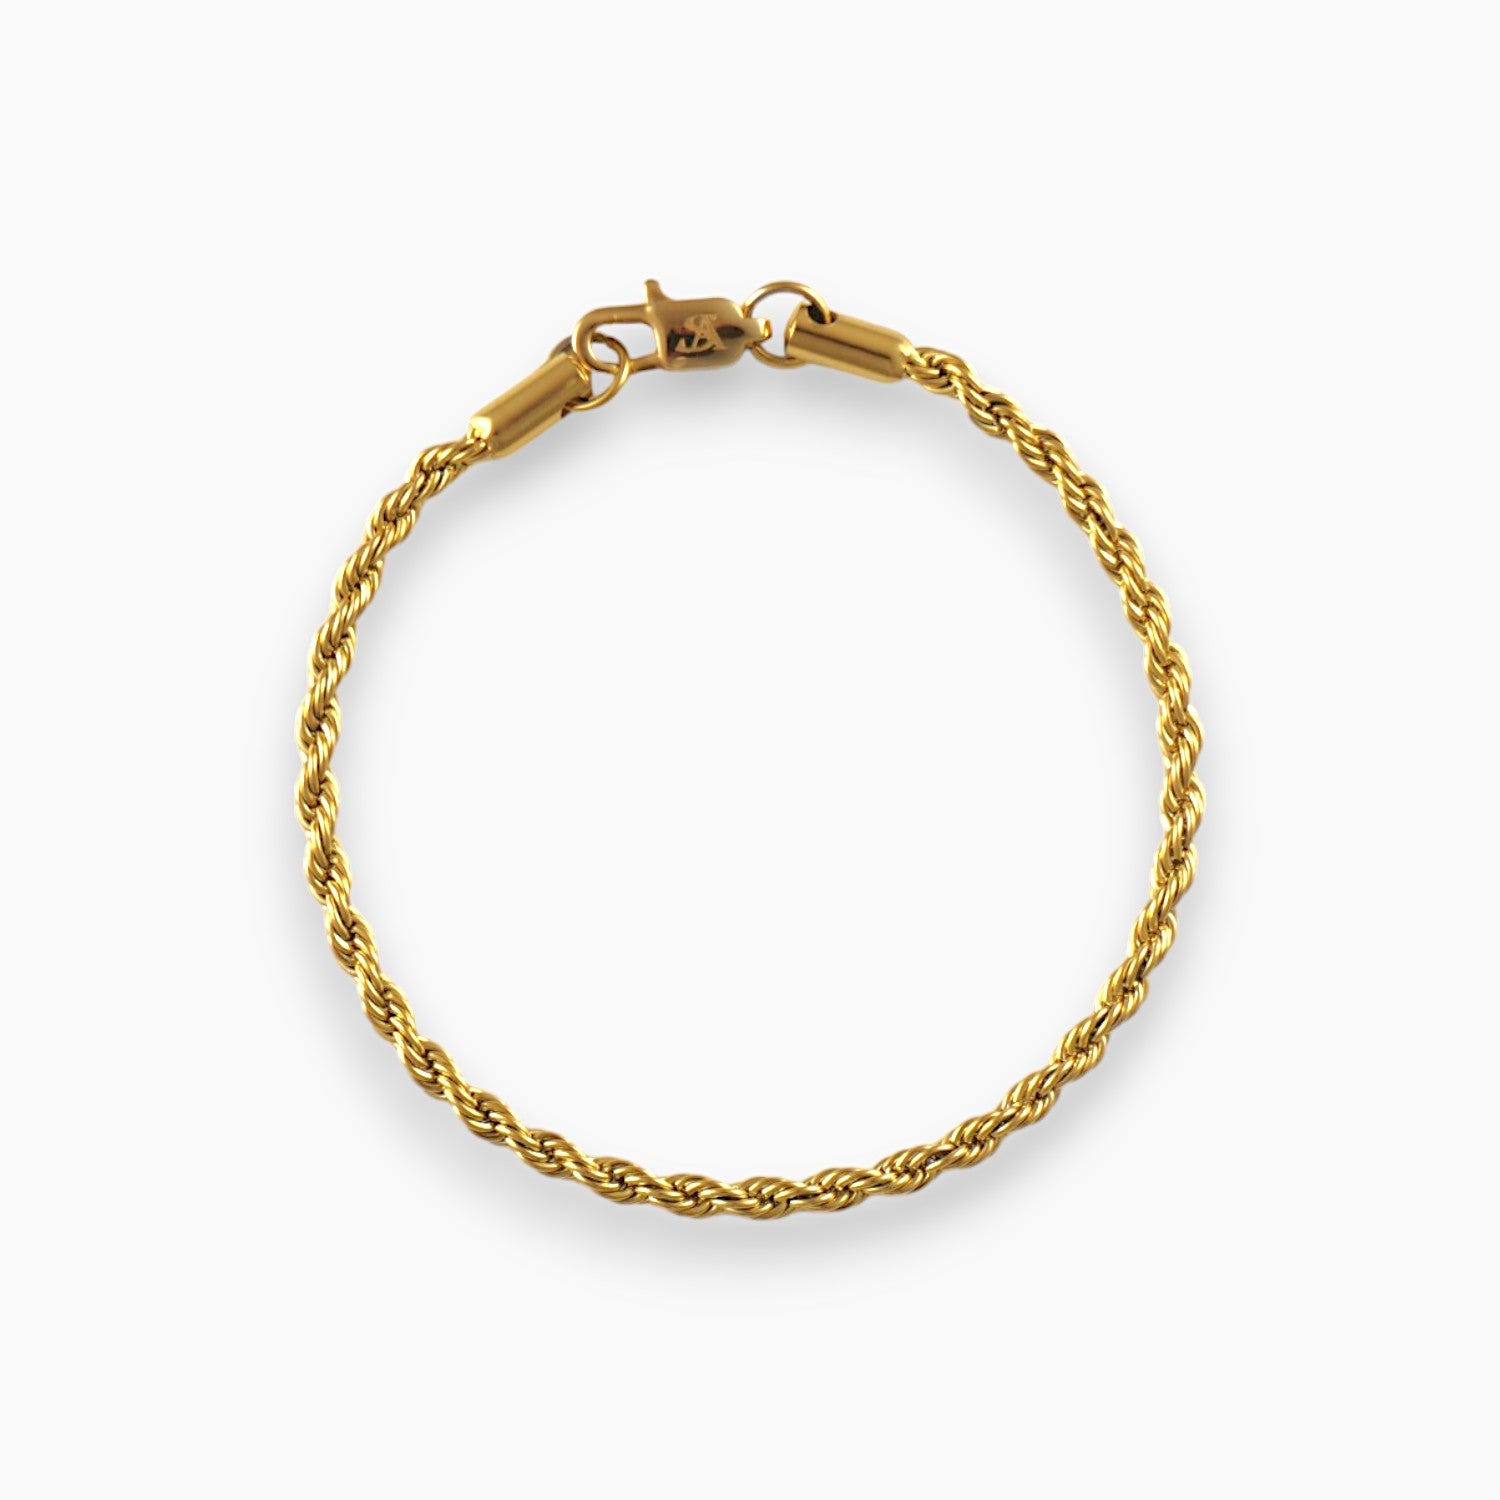 3mm gold rope bracelet